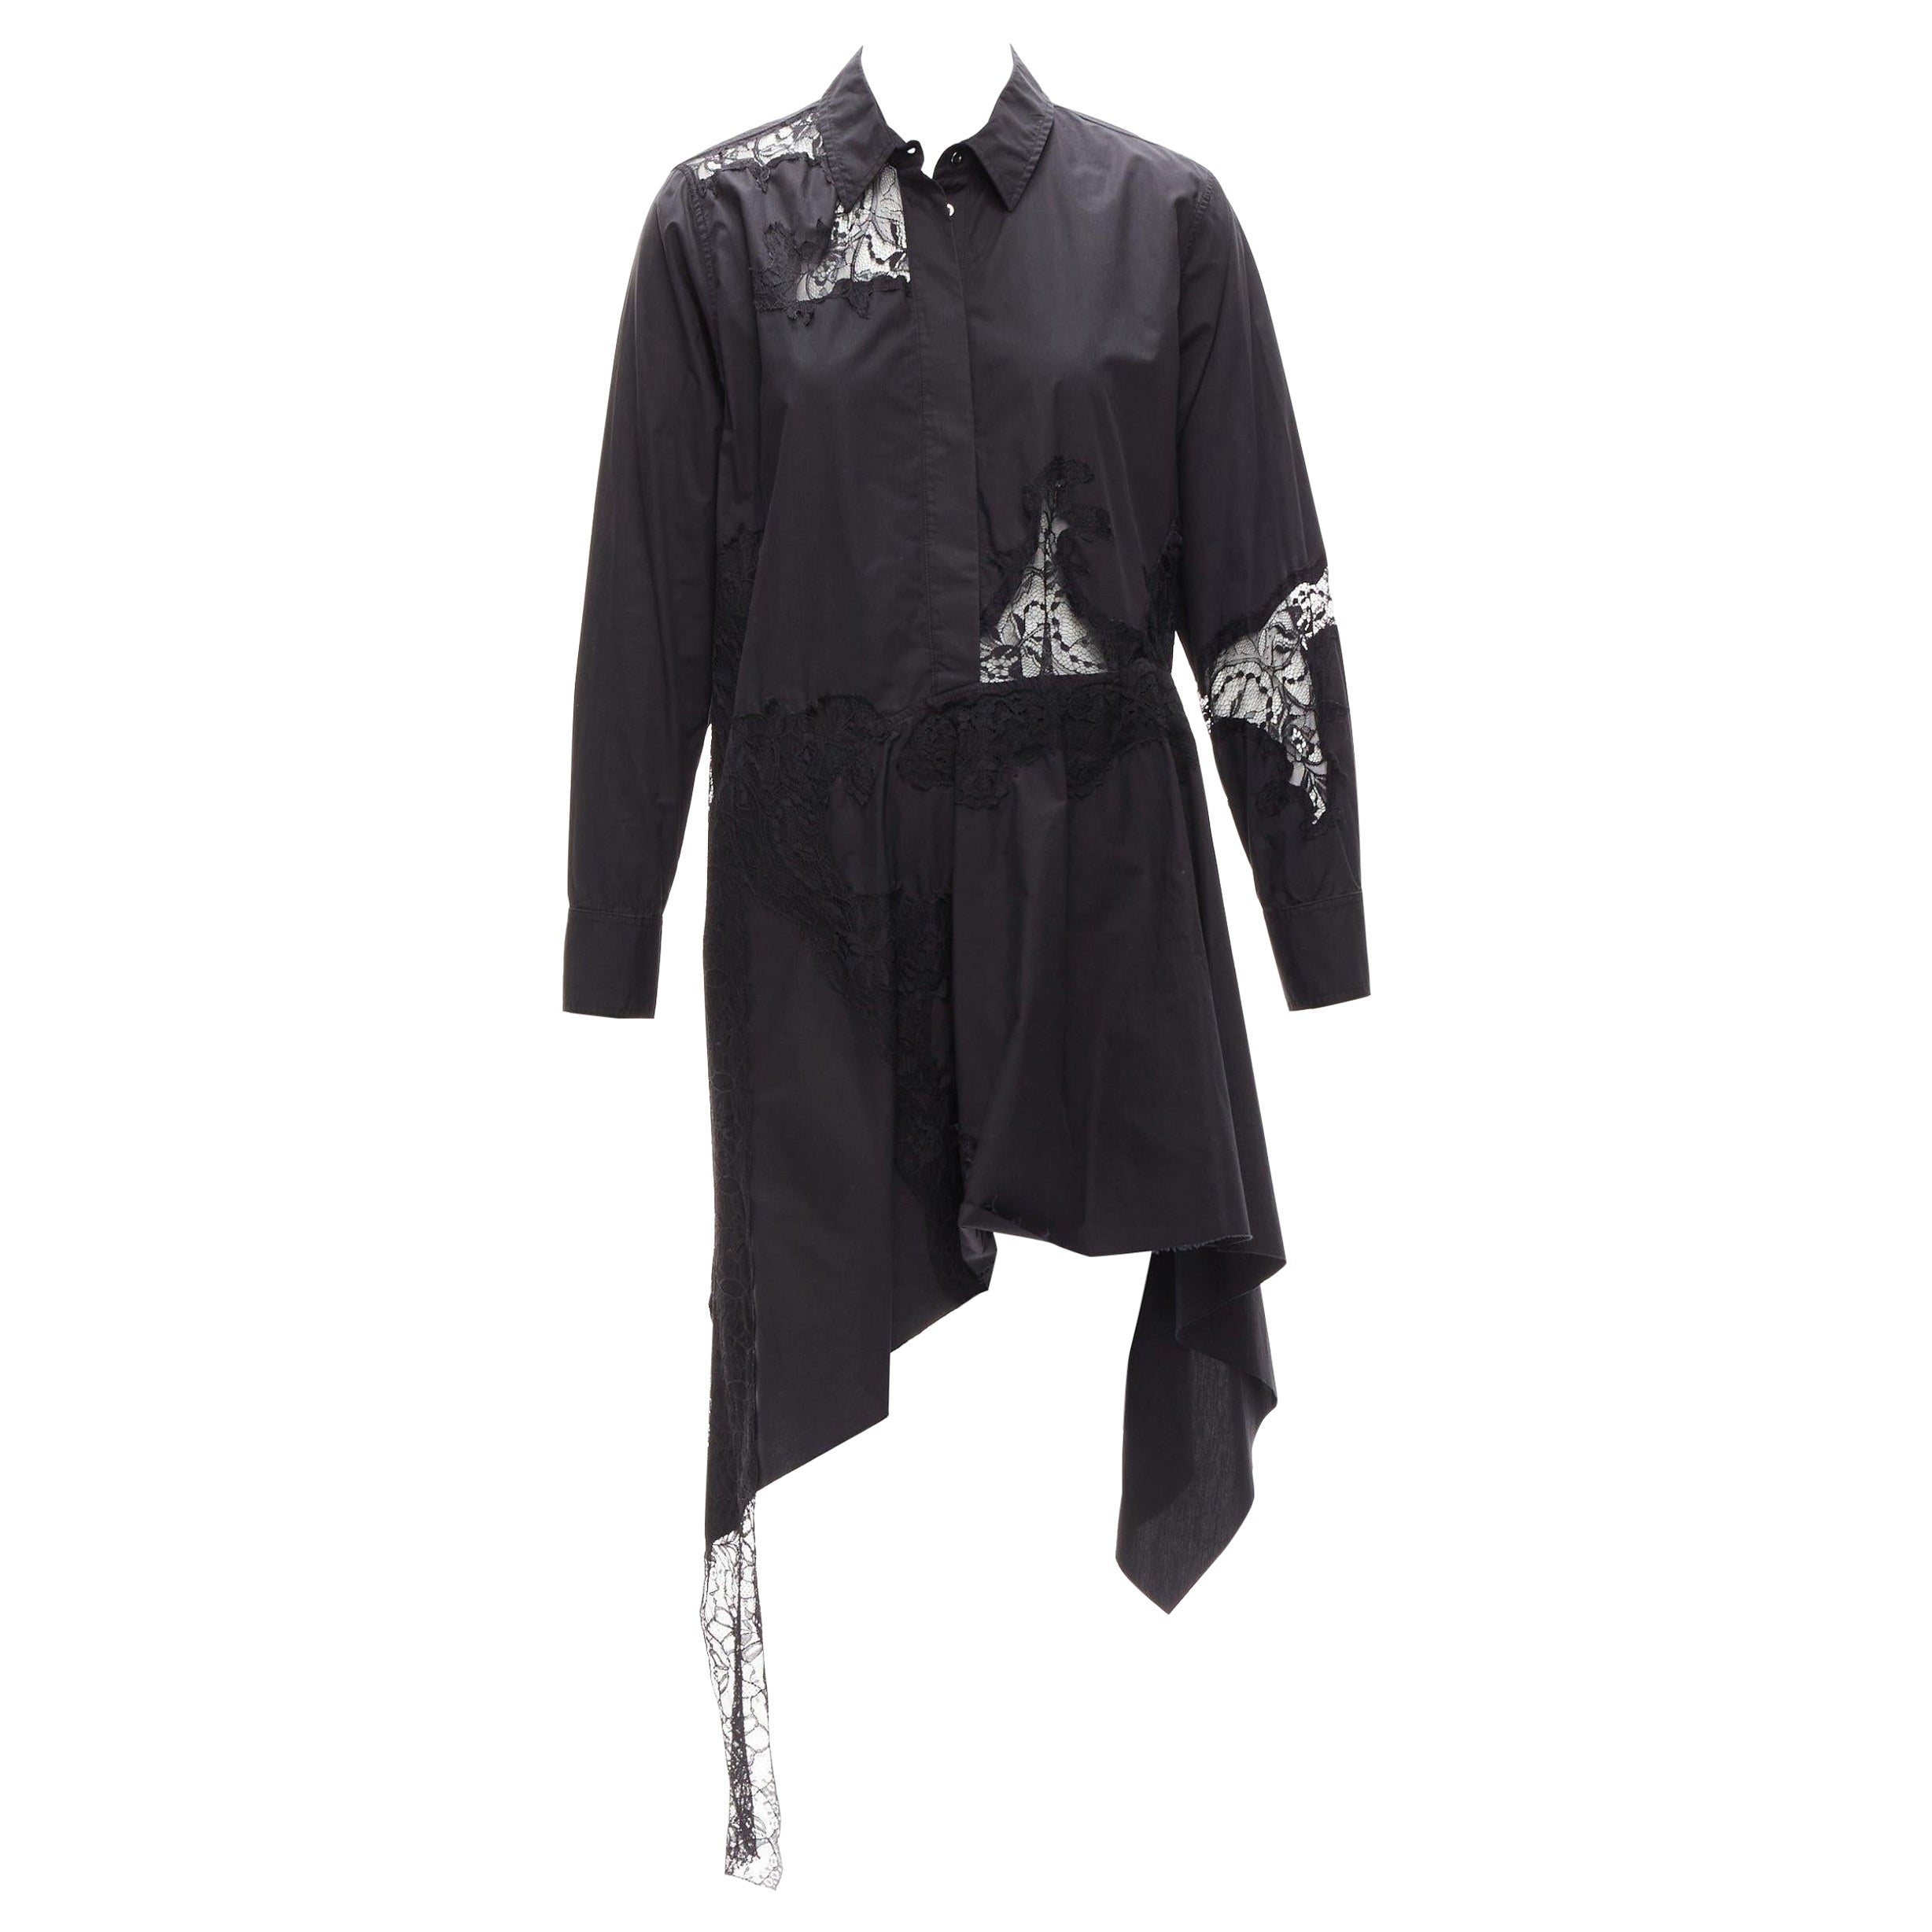 MARQUES ALMEIDA 100% cotton black lace applique cut out bias shirt dress XS For Sale